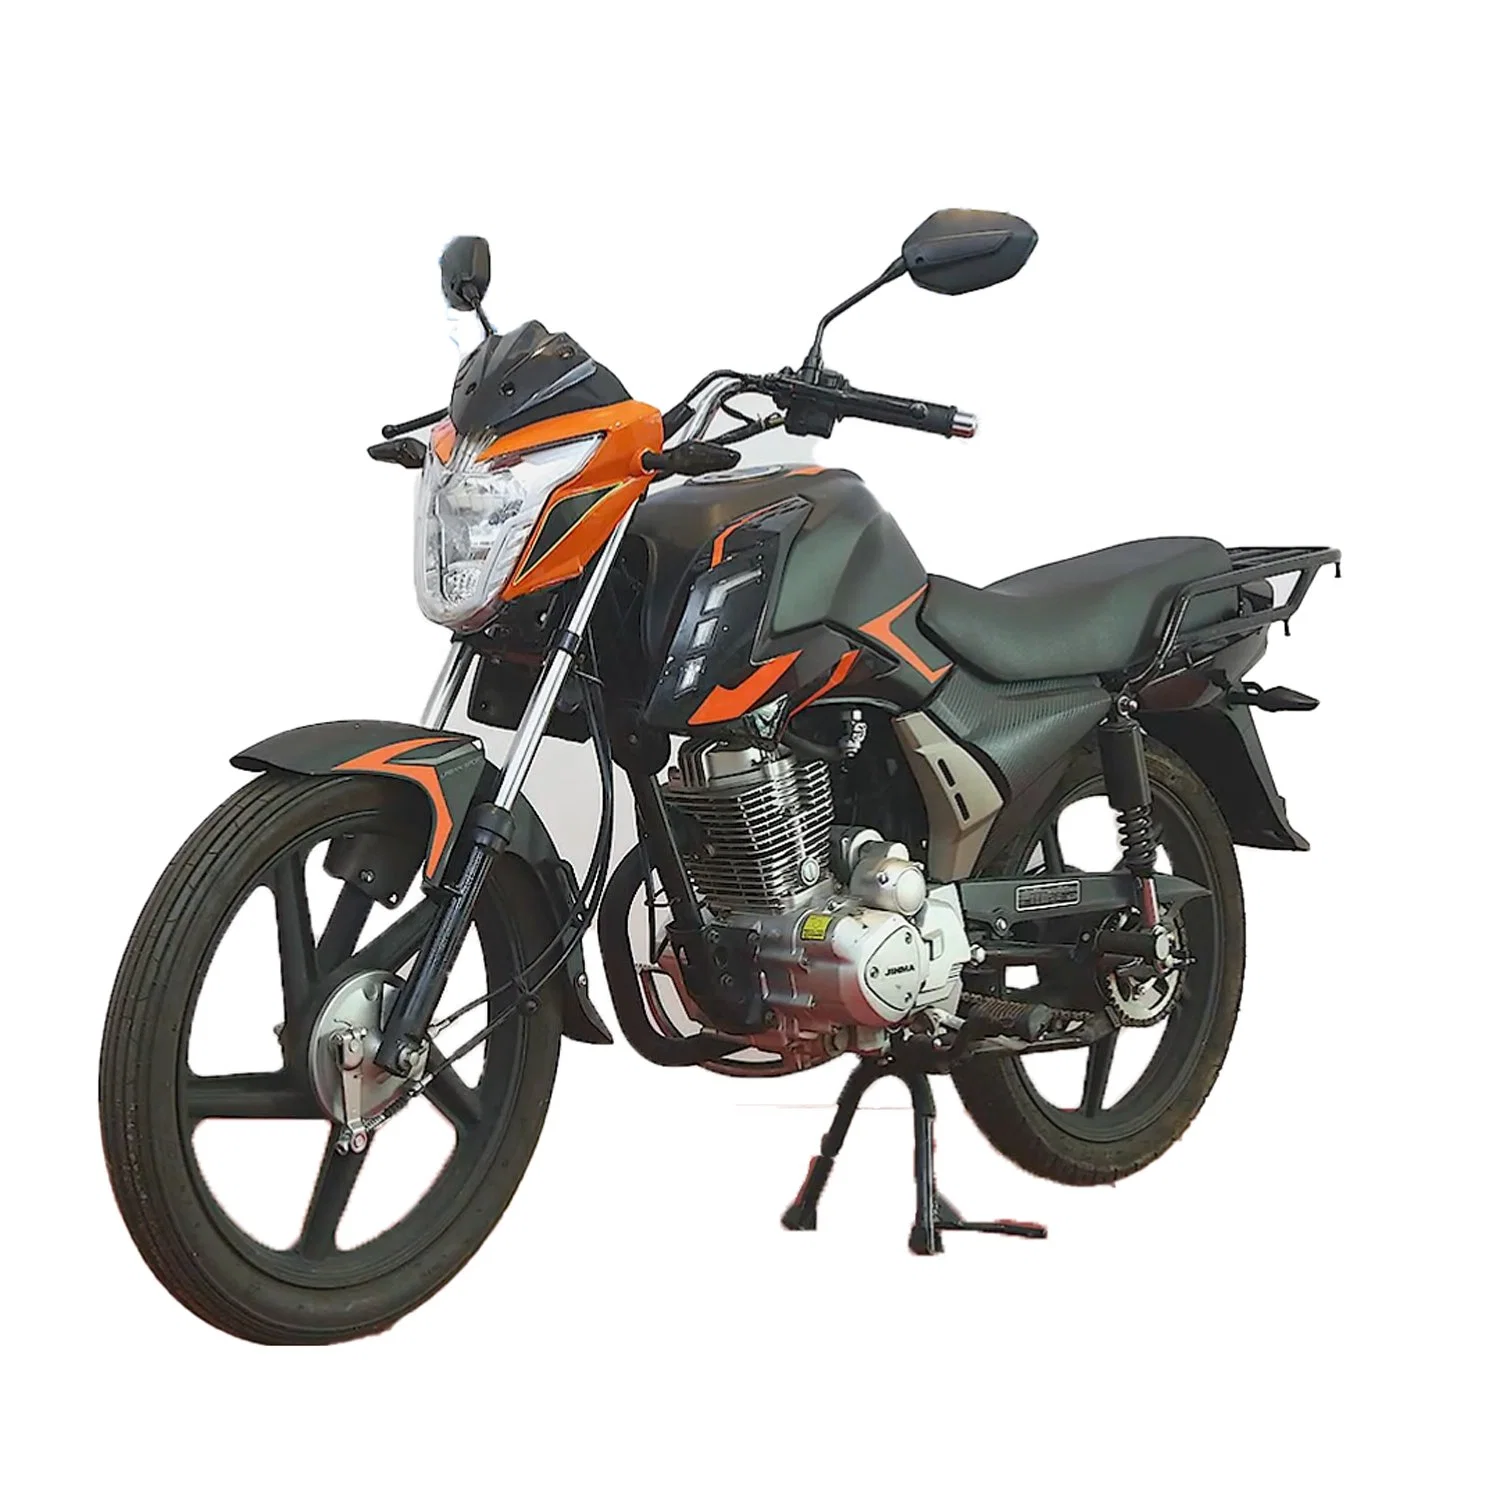 Hongyi Mocha Motocicletas 125cc/150cc Motocicletas baratas a la venta Diseño Clásico Motor Cg de gasolina de 4 tiempos